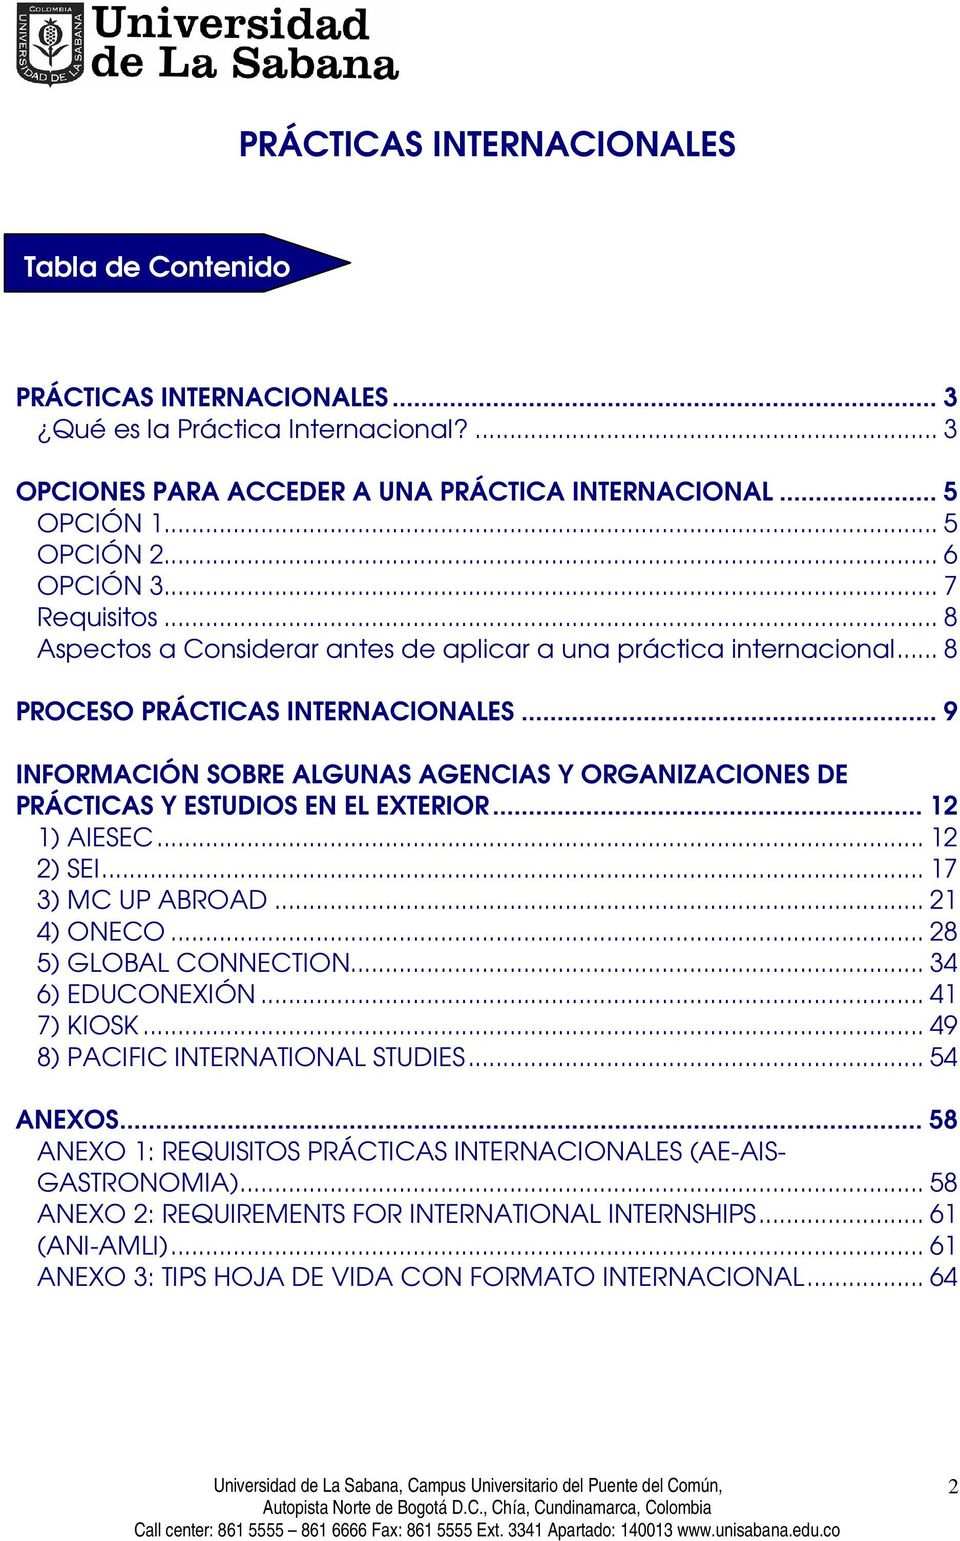 .. 9 INFORMACIÓN SOBRE ALGUNAS AGENCIAS Y ORGANIZACIONES DE PRÁCTICAS Y ESTUDIOS EN EL EXTERIOR... 12 1) AIESEC... 12 2) SEI... 17 3) MC UP ABROAD... 21 4) ONECO... 28 5) GLOBAL CONNECTION.